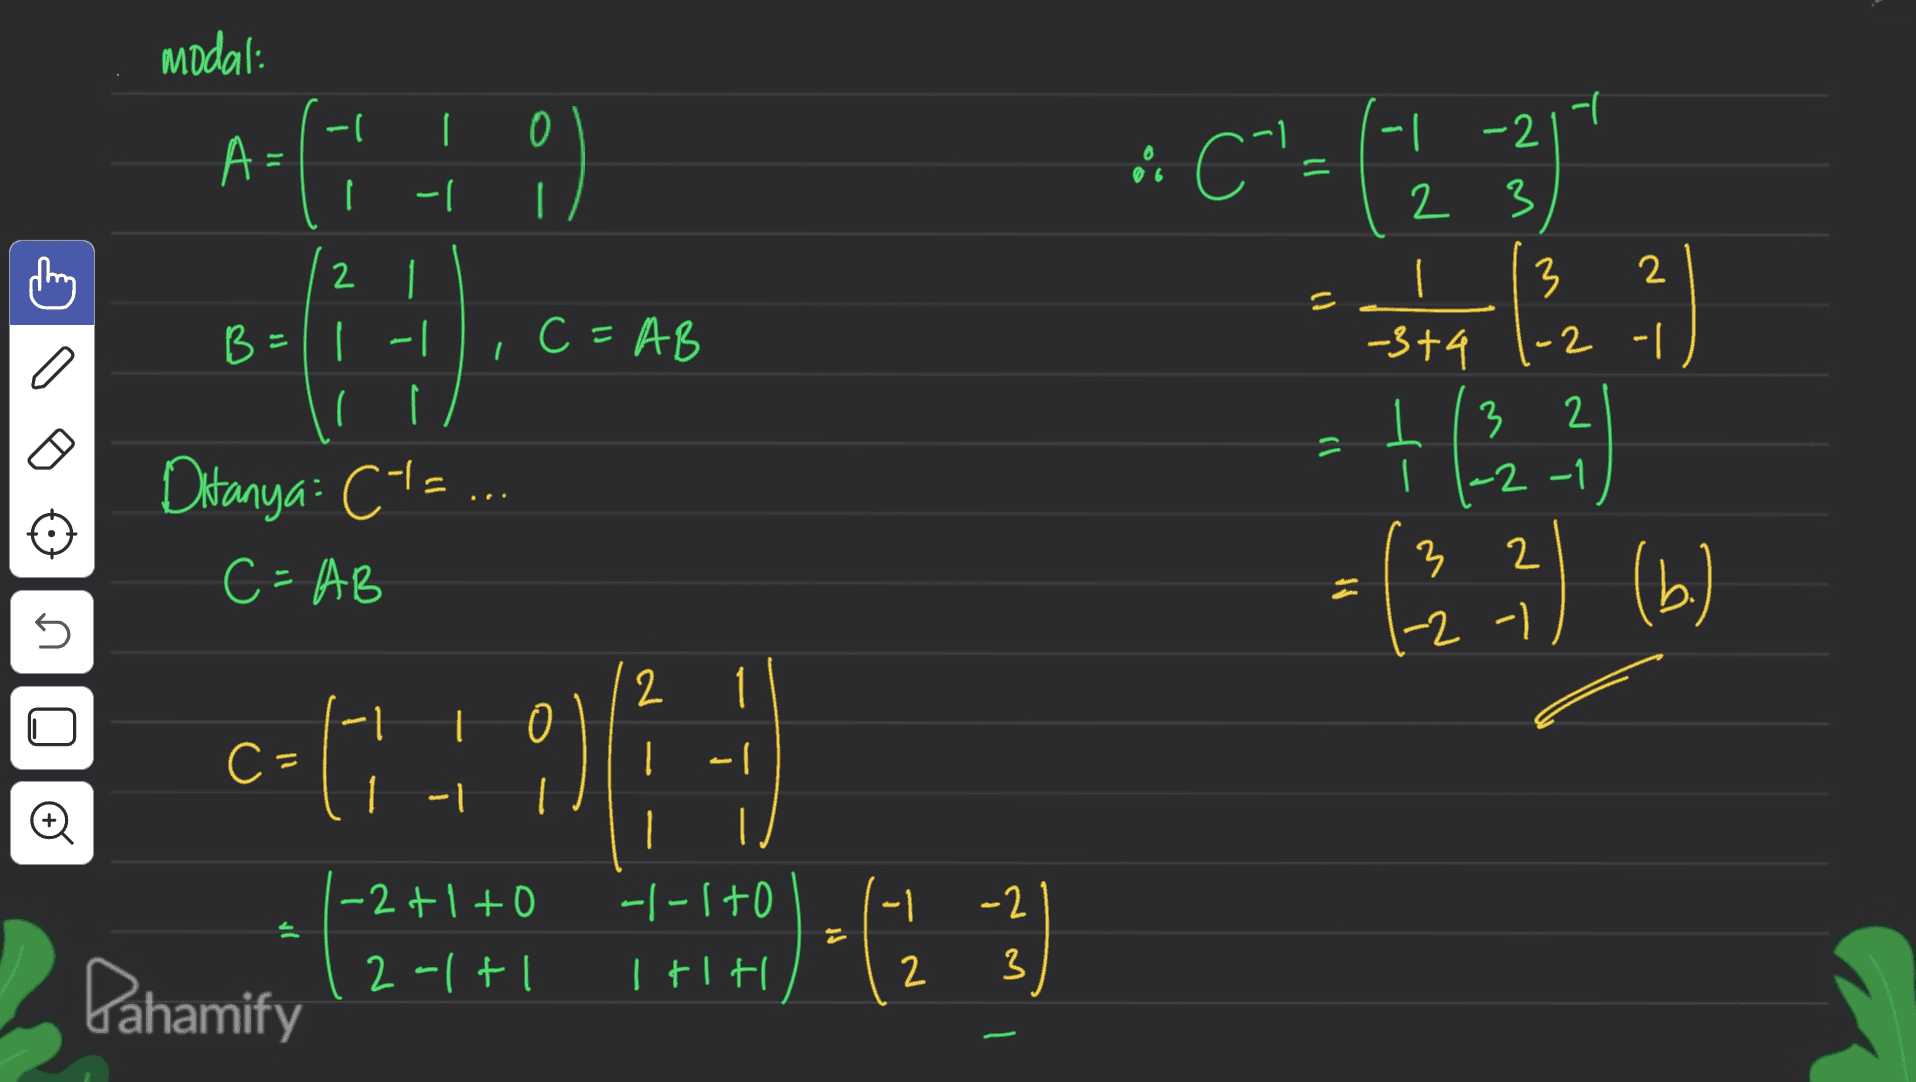 modal: ) - | 0 다. 다. A= A CIE () -1 | -2 2 3 90 ( 다. - 2 1 | T 0 살 뿌 |- 1 sa C=AB | 0 -2 3t9 ( | = 173 3 2 | -2 -1 2 Ditanya: C1=... C=AB 3 (24) (b) G ㅏ 러 2 1 0 C- 예 이 | 1-1 1 | -2+1 to - 이 -2 윽 느 나 | FTf 이 2 3 Pahamify 